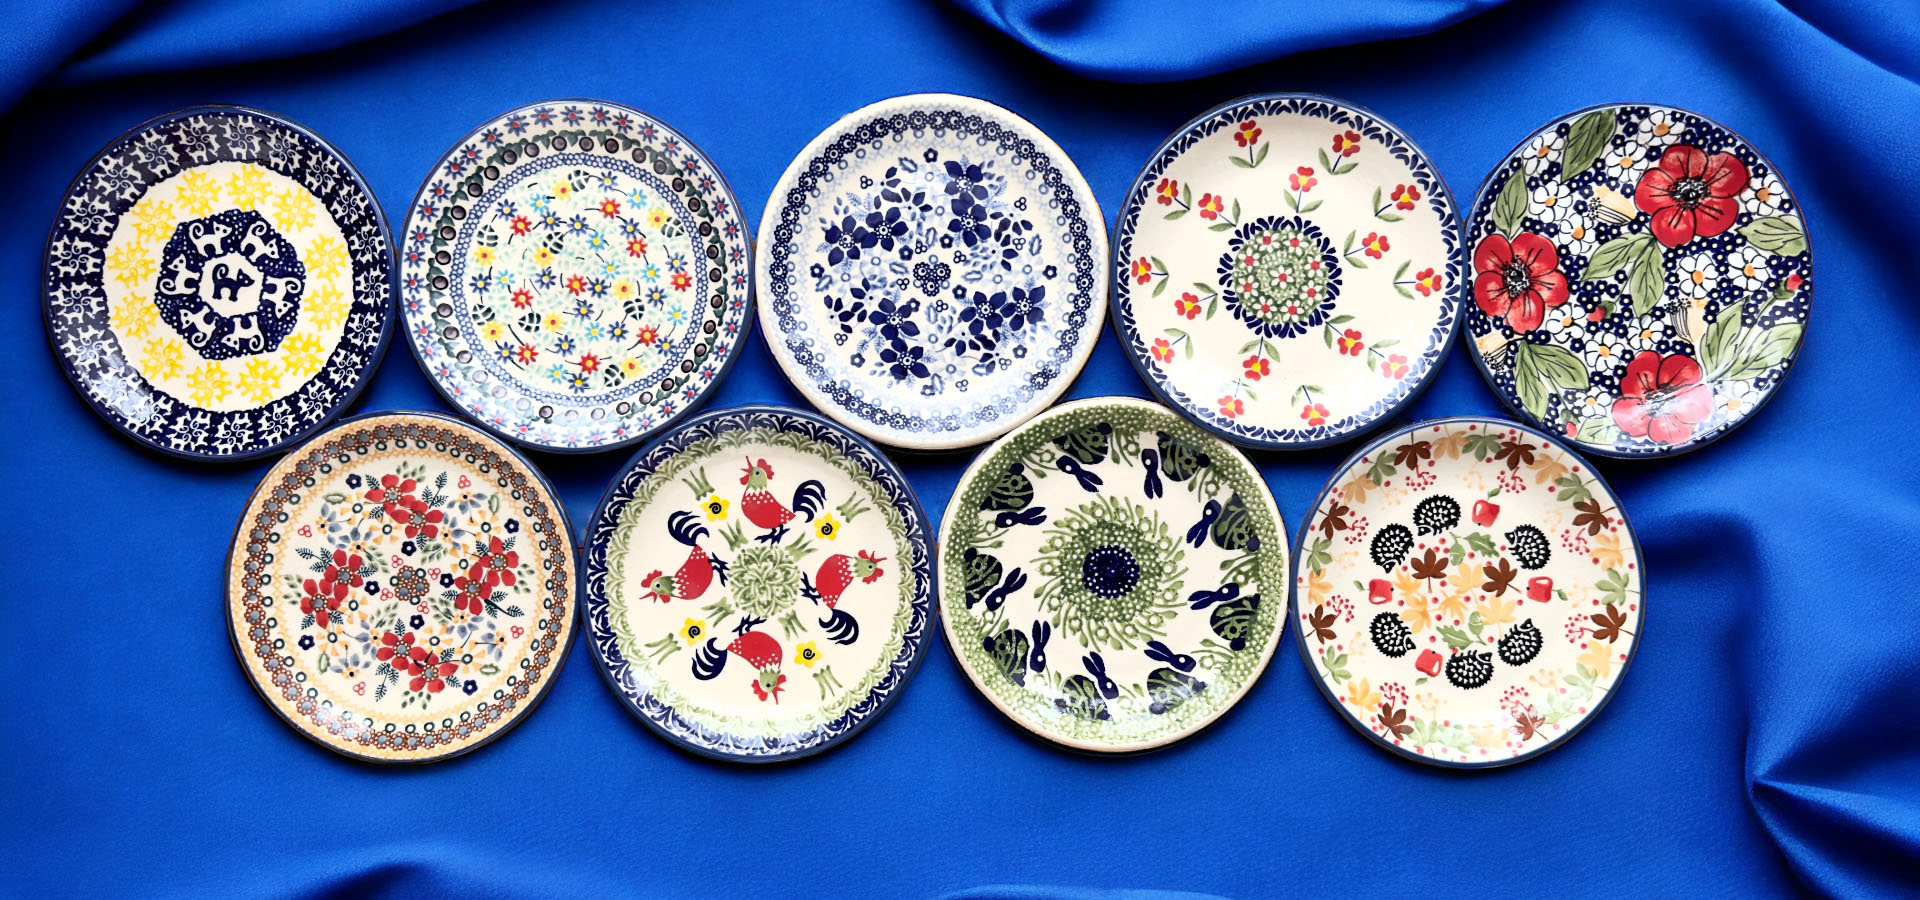 彩り豊かな陶器の皿コレクション